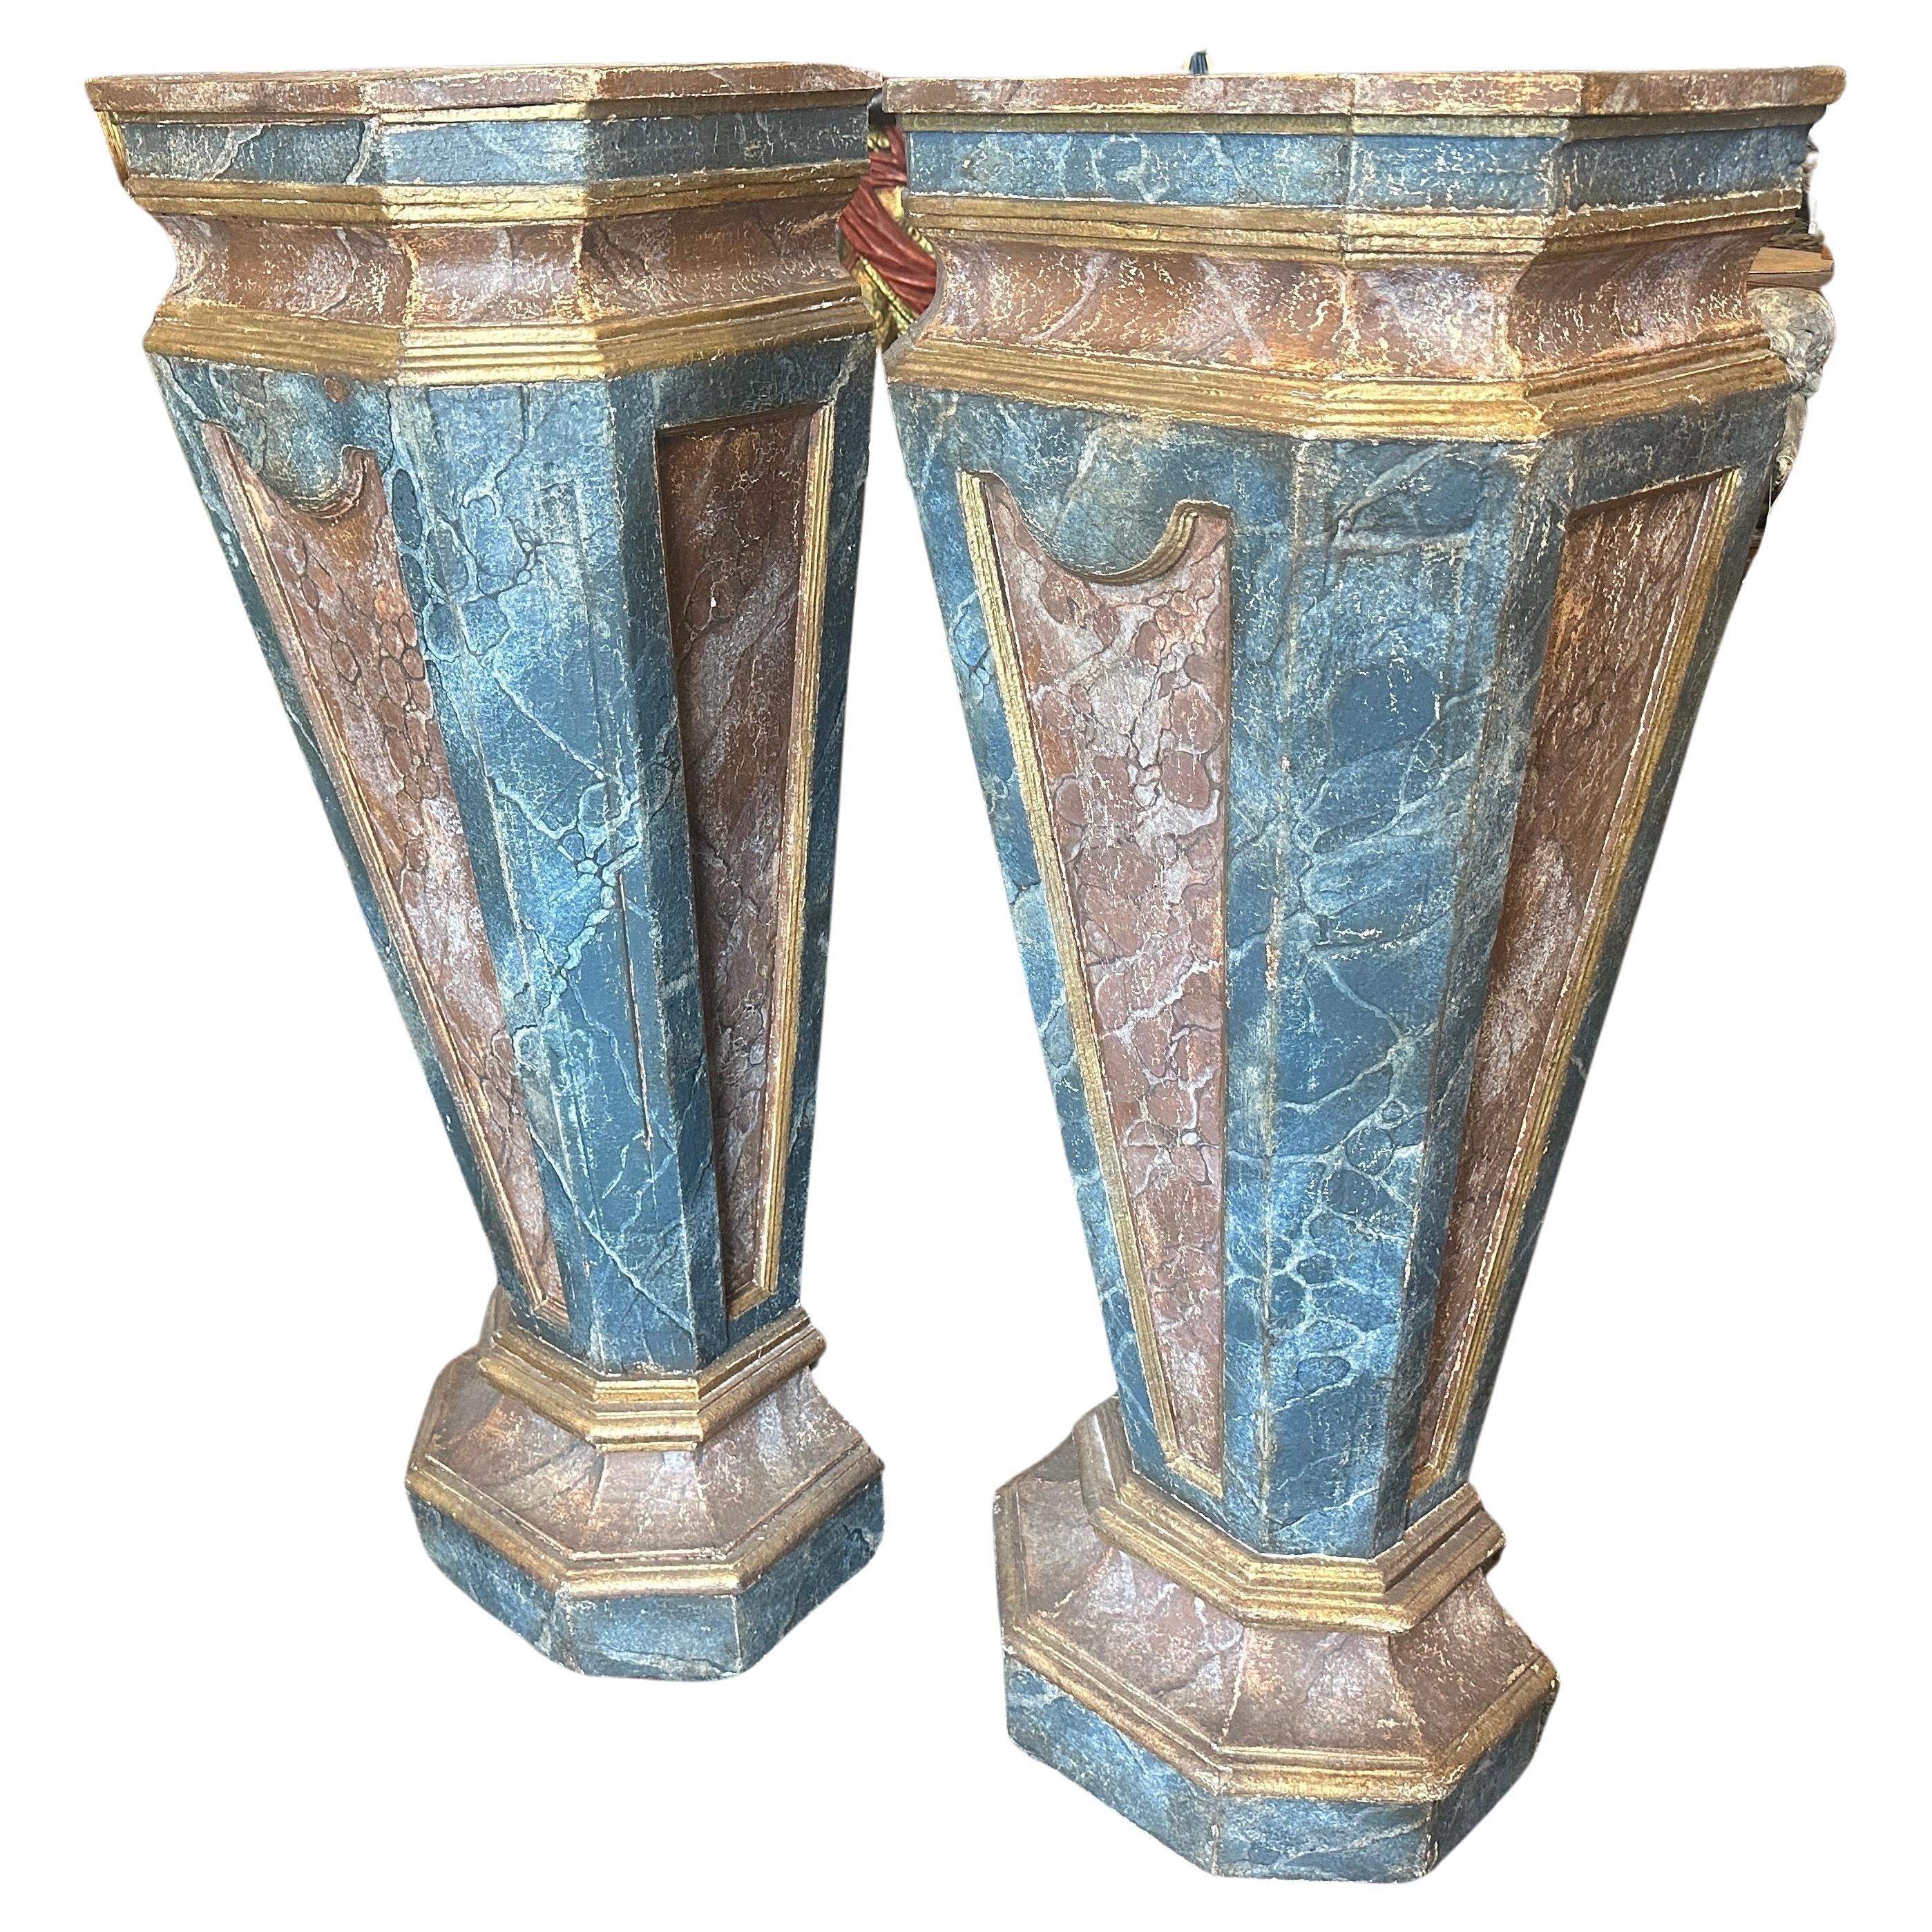 Due colonne in legno laccato blu, marrone e oro, realizzate artigianalmente in Italia alla fine del XIX secolo, si trovavano in un palazzo nobiliare siciliano ai quattro angoli di un grande salone; le colonne disponibili sono 4 e vengono vendute in